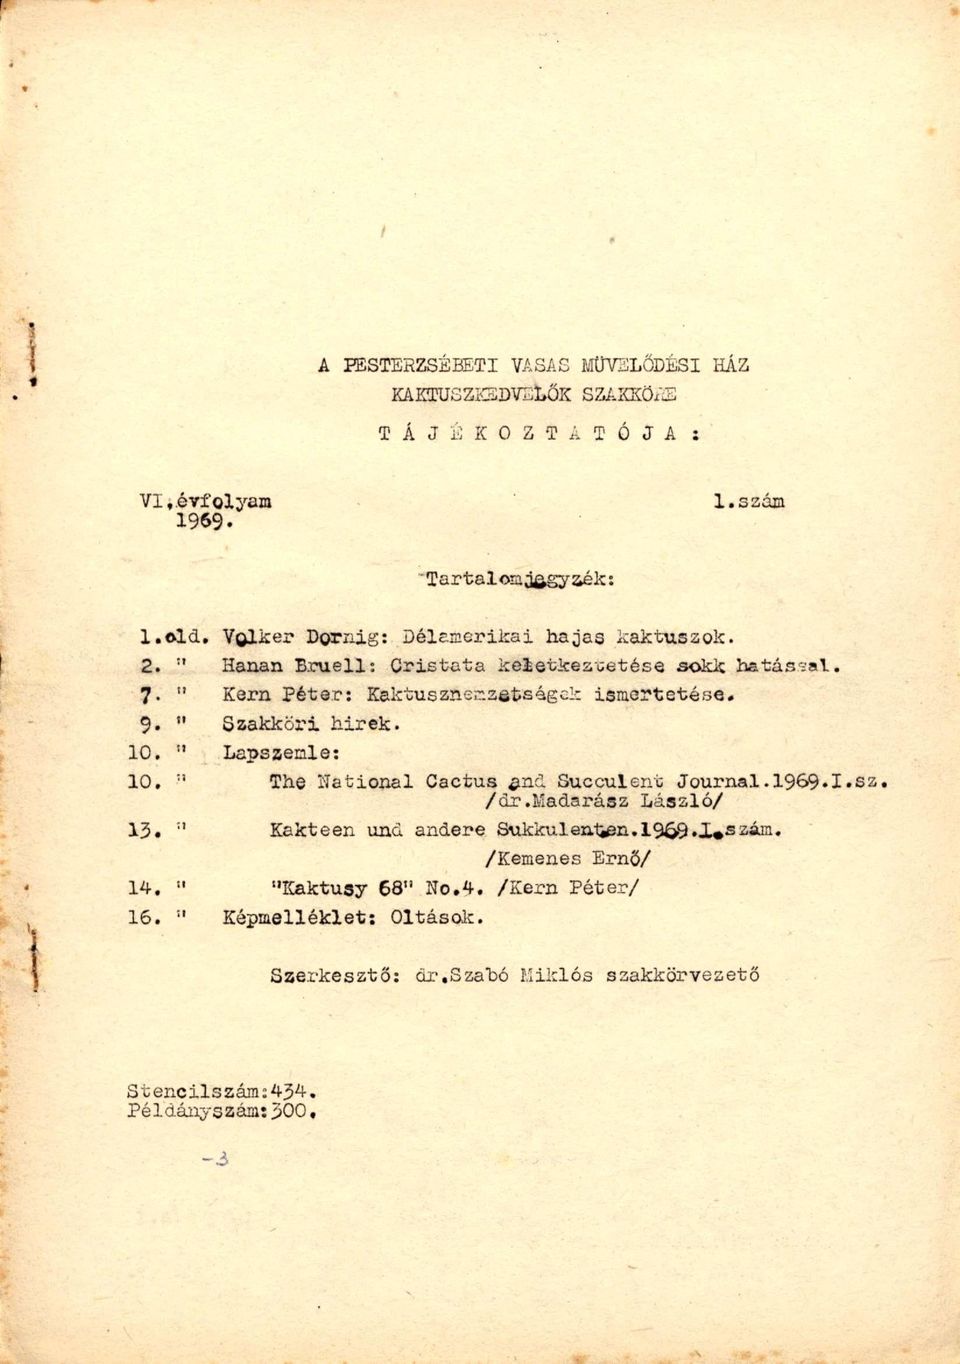 9. " Szakköri hirek. 10, " Lapszemle: 10, The ílational Cactus ^ind Succulent Journal. 1969.1.sz, /dr.madarász László/ 13.